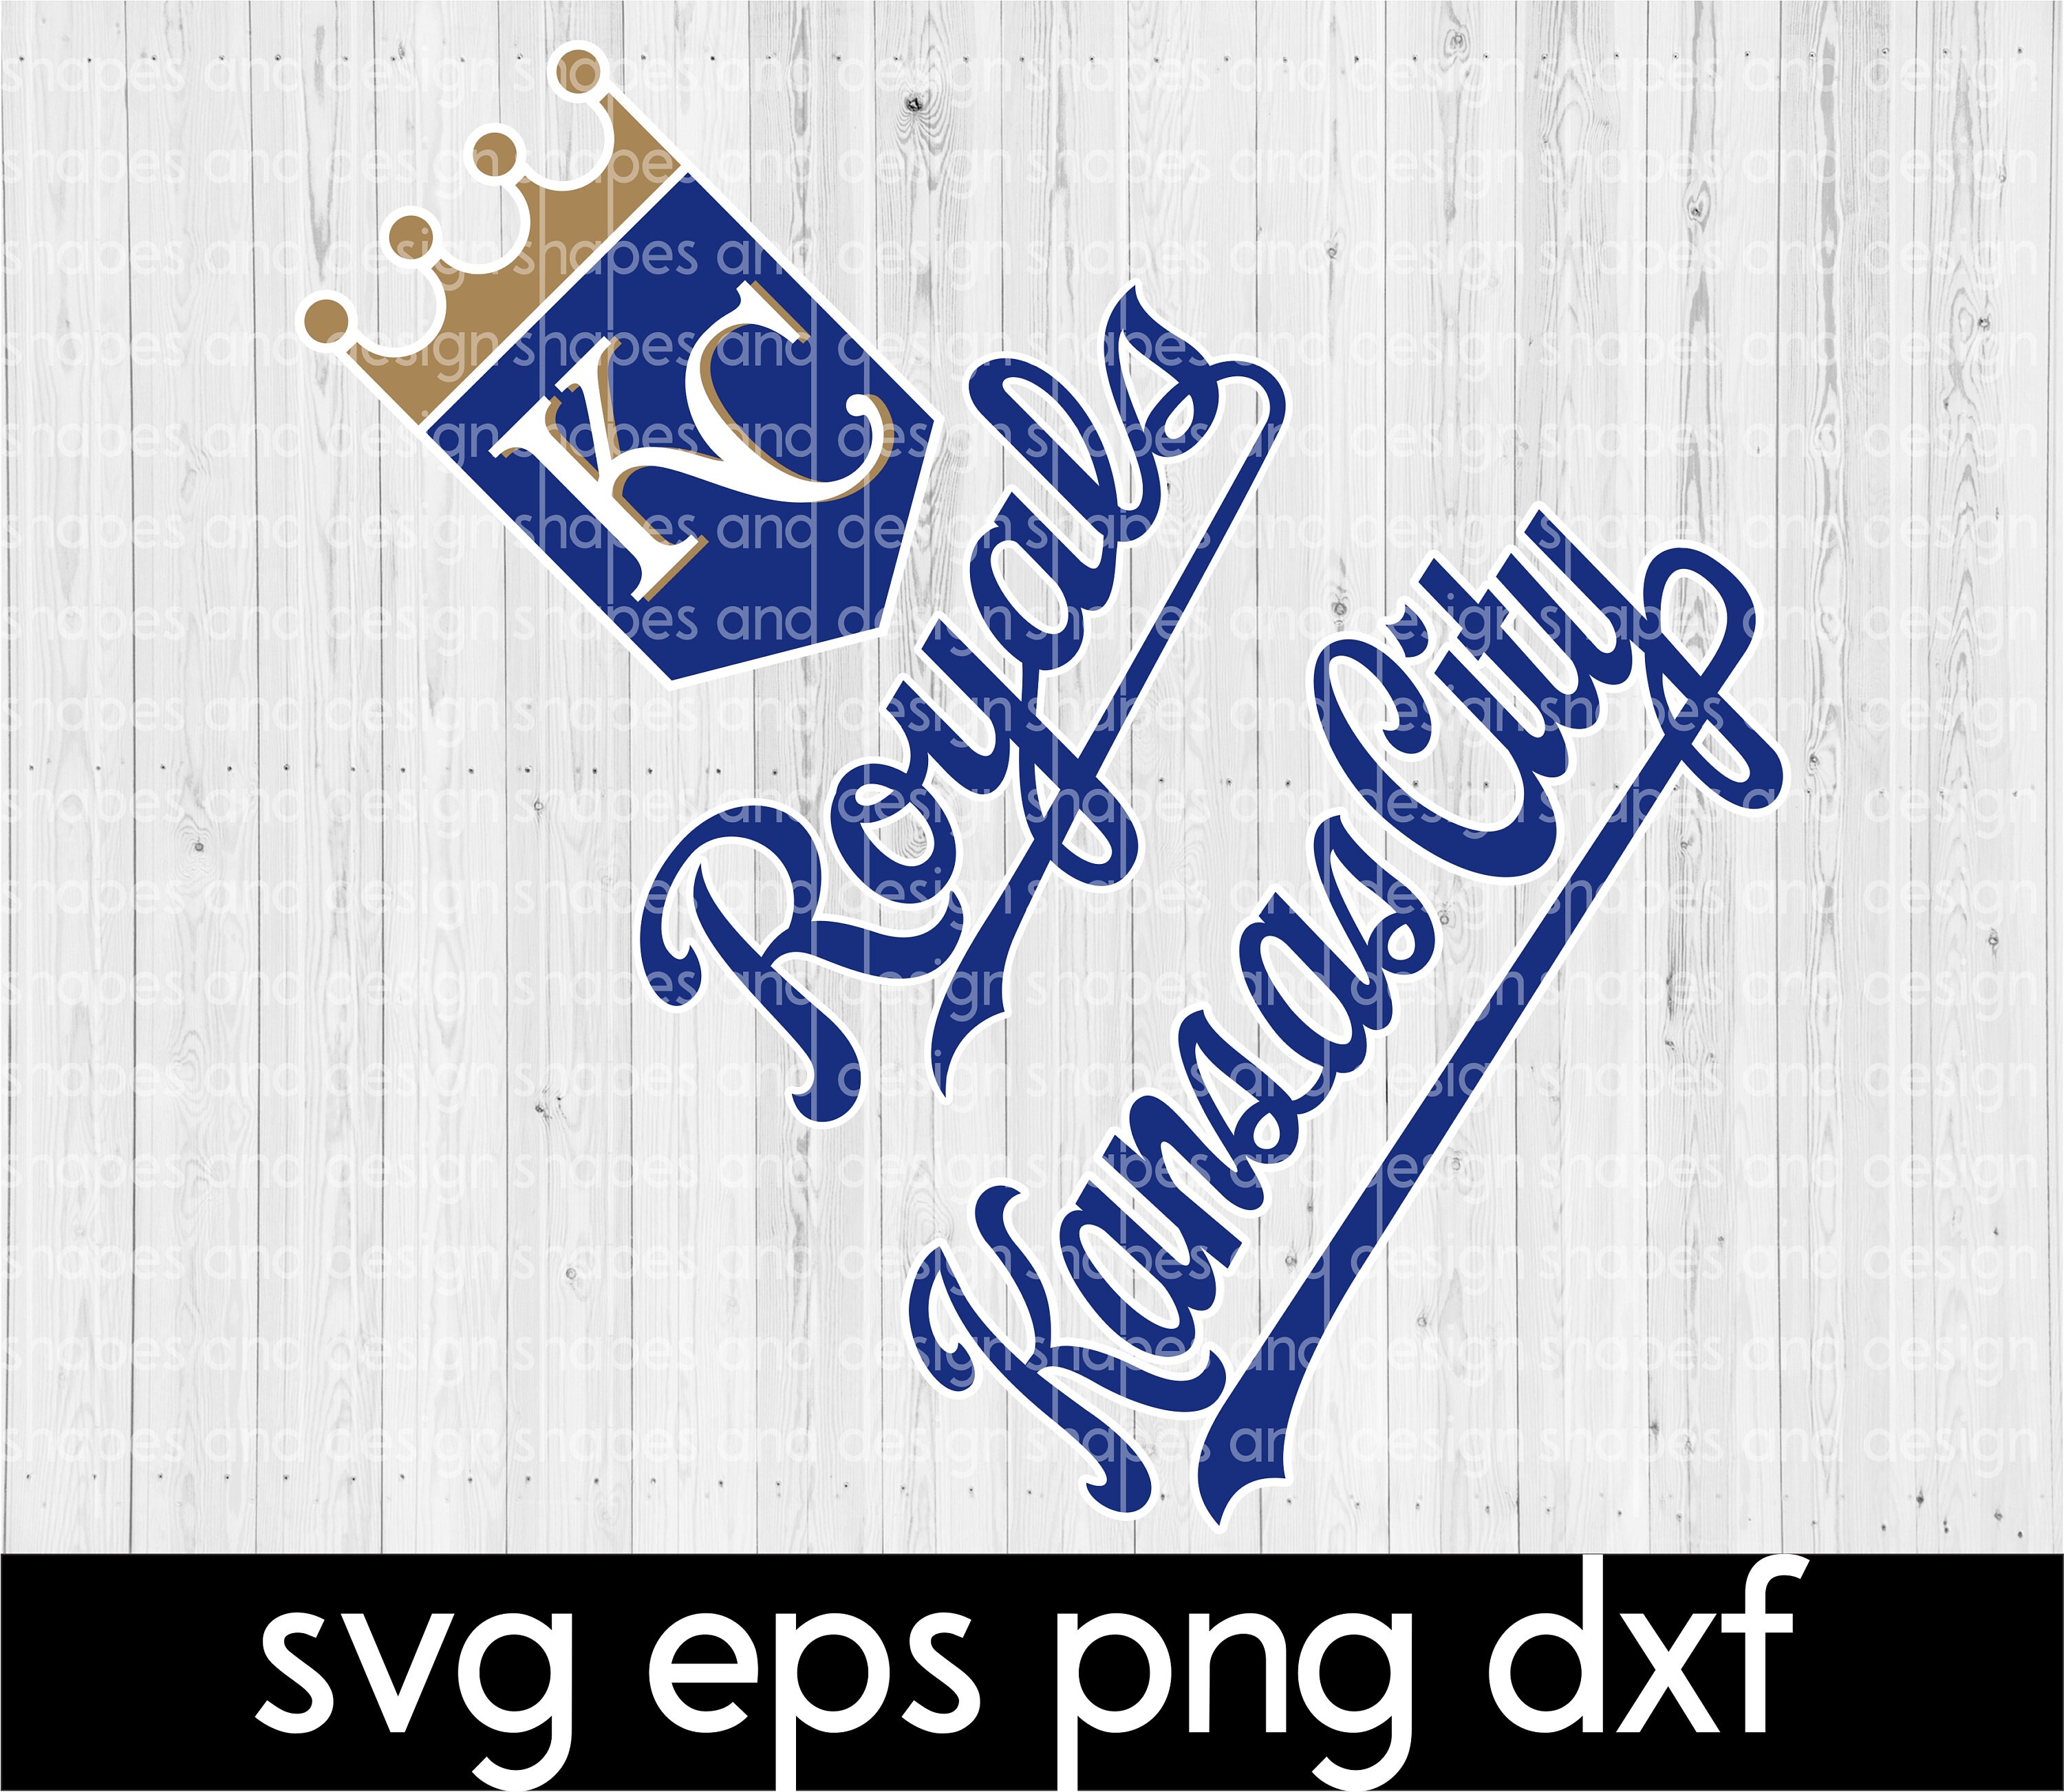 MLB Logo Kansas City Royals, Kansas City Royals SVG, Vector Kansas City  Royals Clipart Kansas City Royals Baseball Kit Kansas City Royals, SVG,  DXF, PNG, Baseball Logo Vector Kansas City Royals EPS